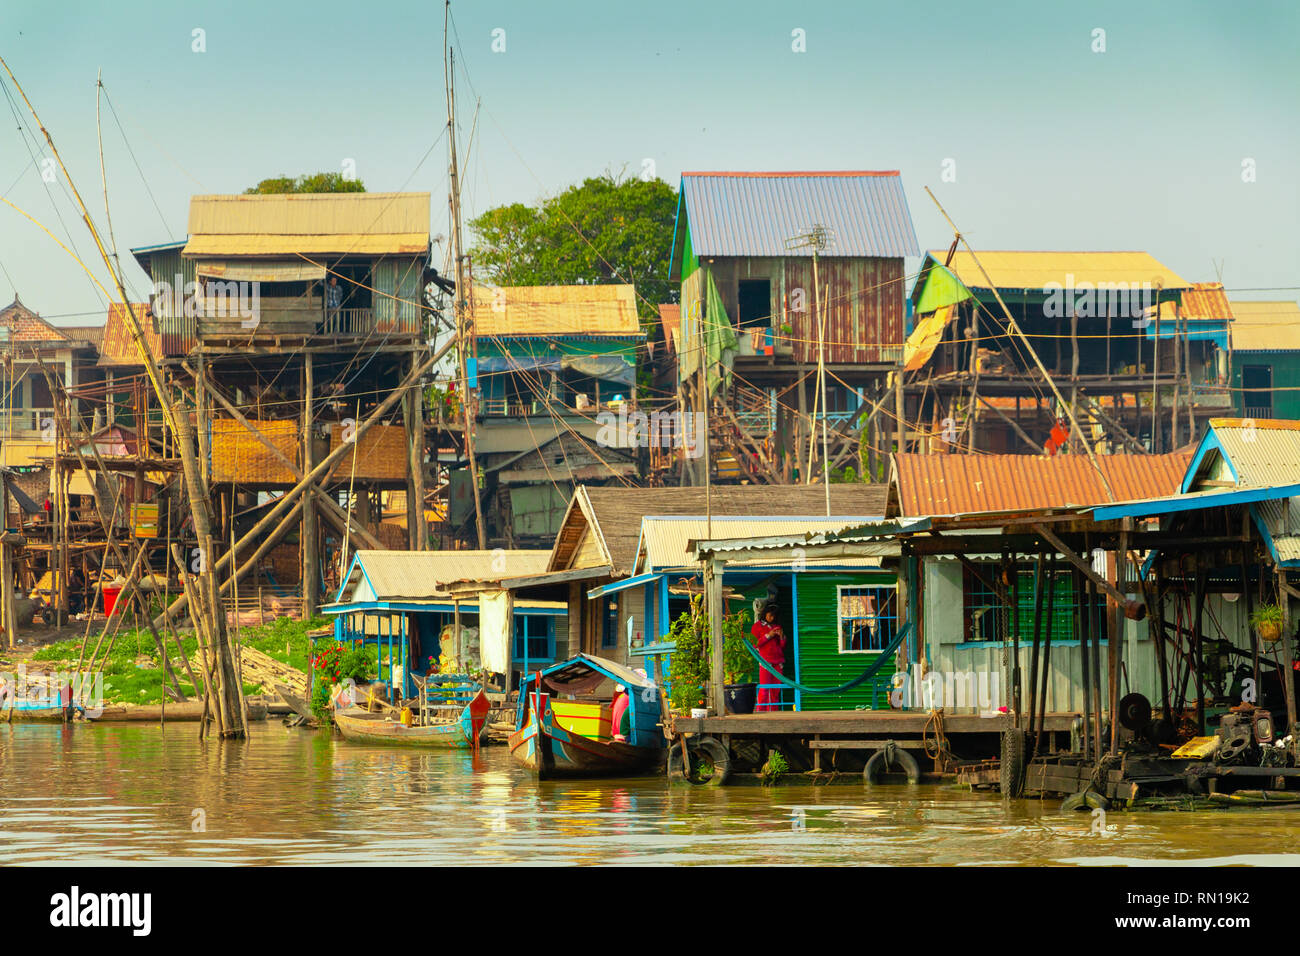 Les maisons en bois sur pilotis abritent de nombreuses familles dans le village flottant sur la rivière Tonle Sap, Kampong Chhnang, Delta du Mékong, le Cambodge, l'Asie Banque D'Images